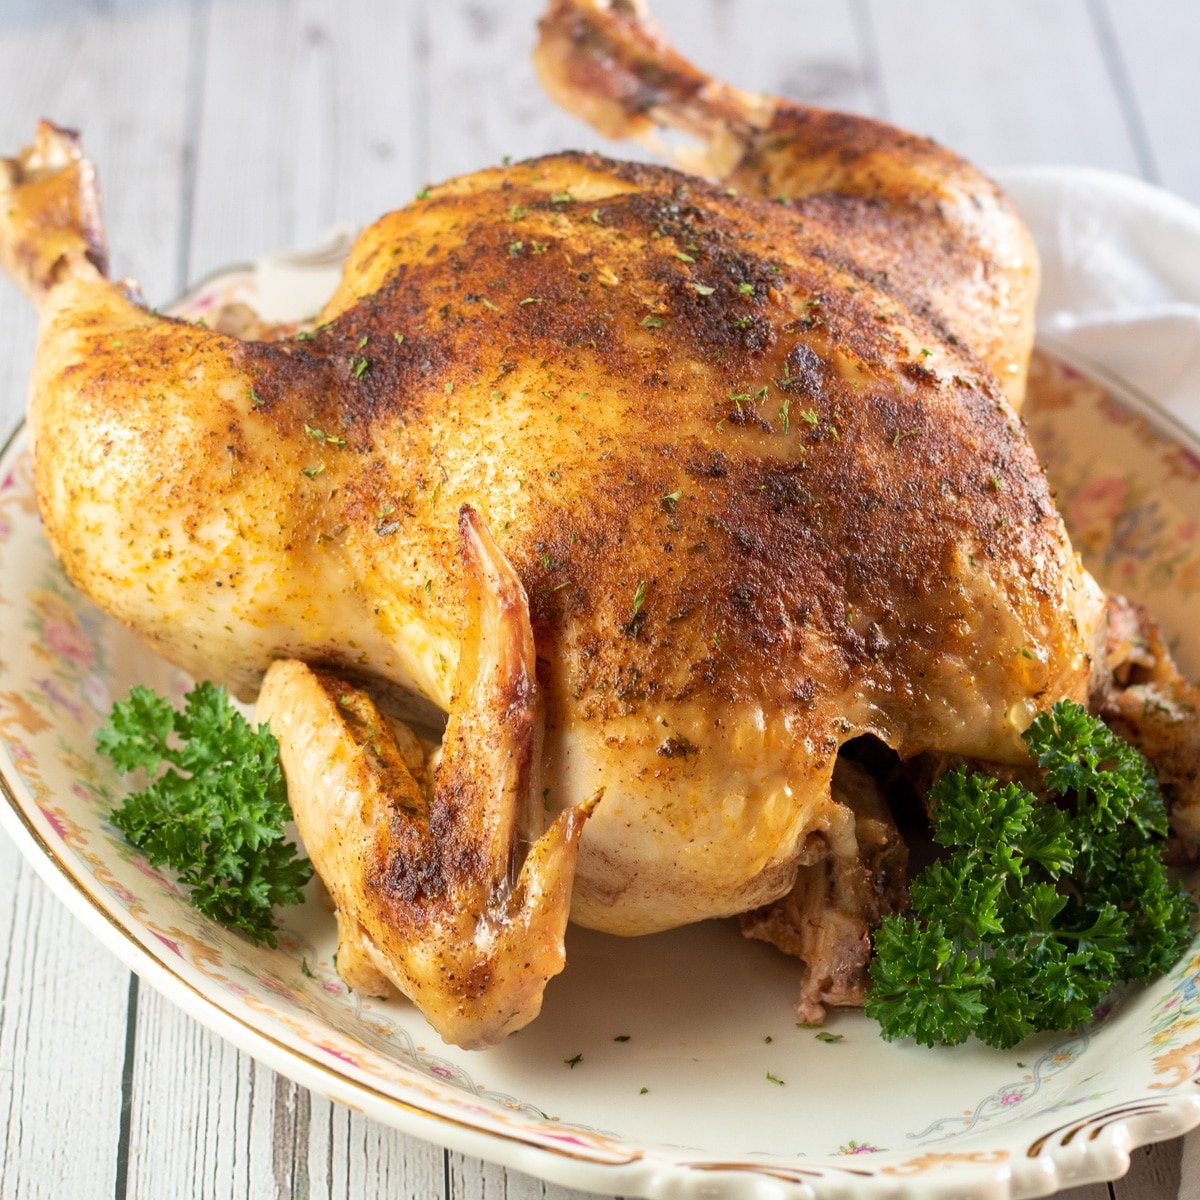 Квадратное изображение жареной курицы на блюде с петрушкой.